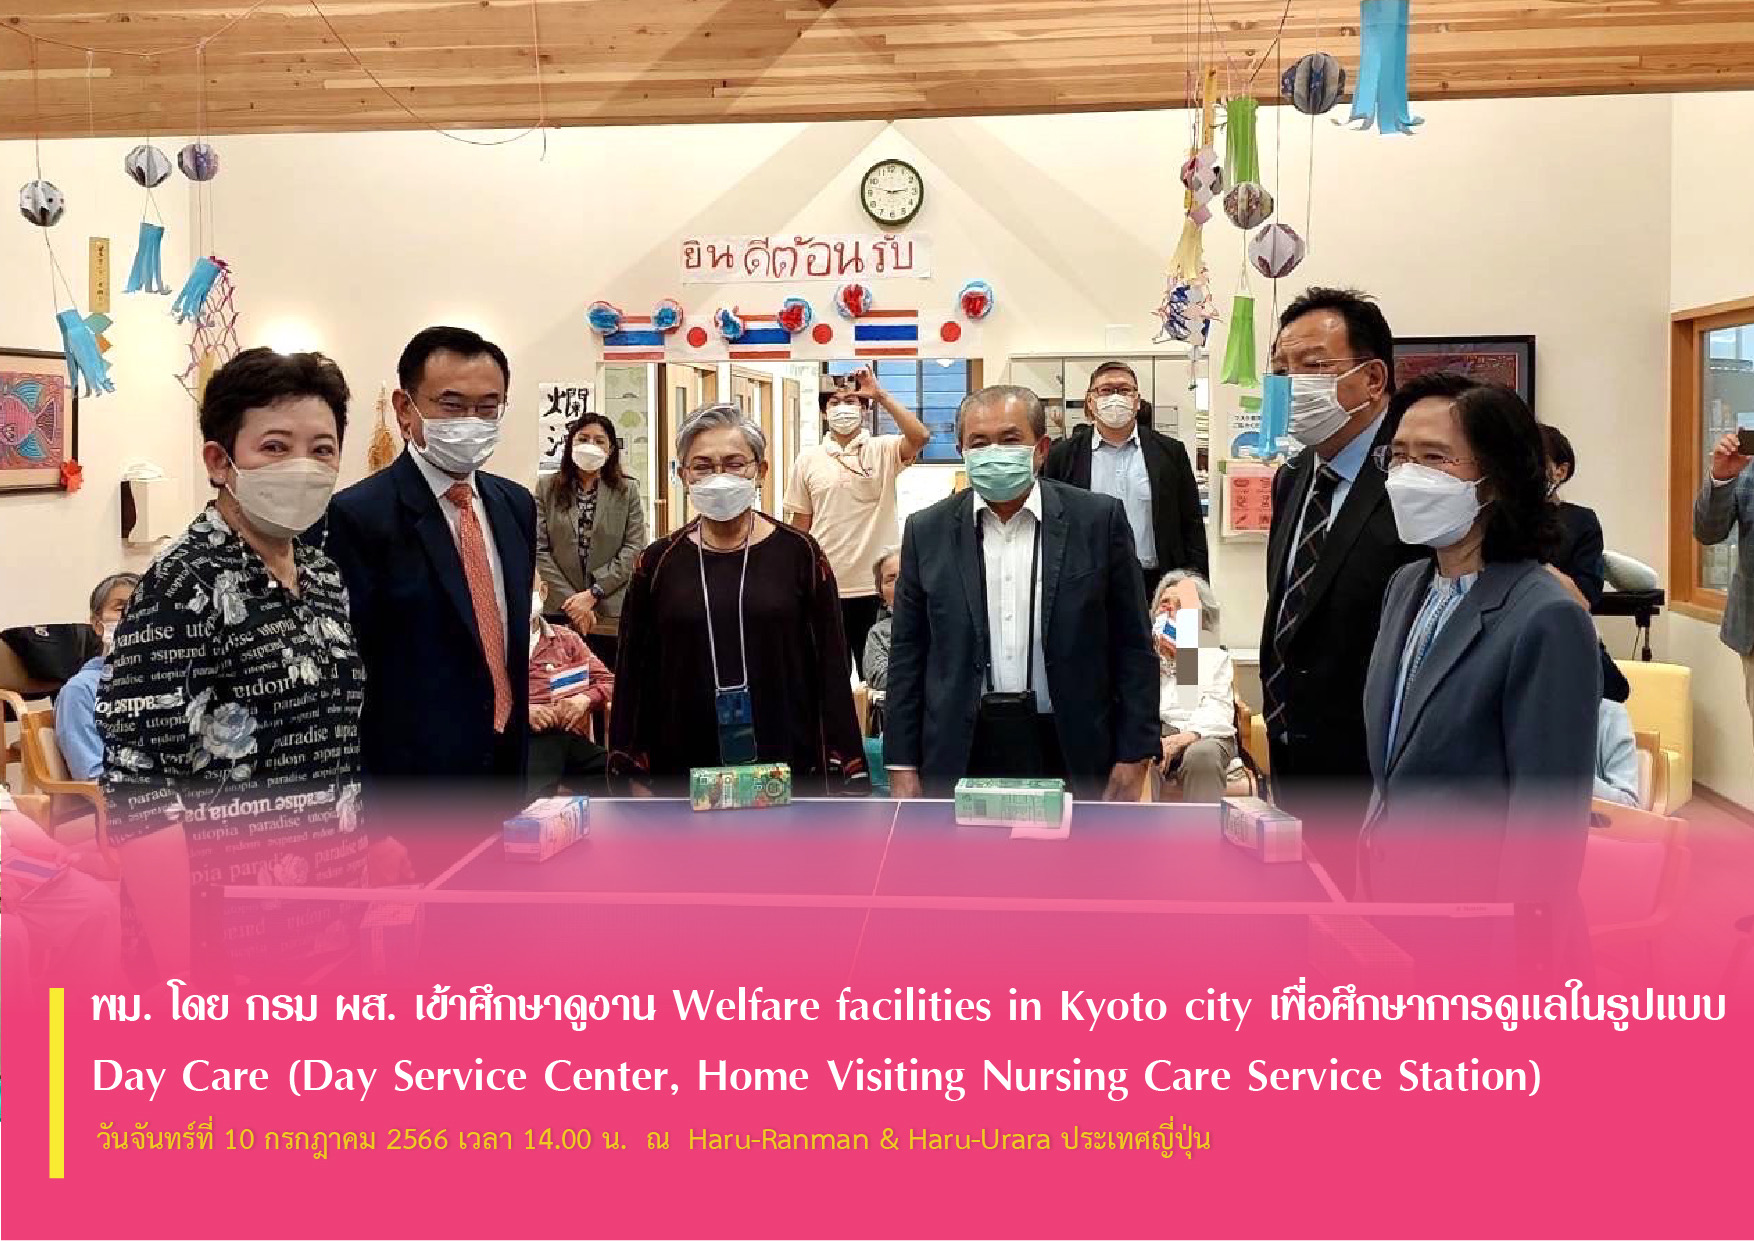 พม. โดย กรม ผส. เข้าศึกษาดูงาน Welfare facilities in Kyoto city เพื่อศึกษาการดูแลในรูปแบบ Day Care (Day Service Center, Home Visiting Nursing Care Service Station)